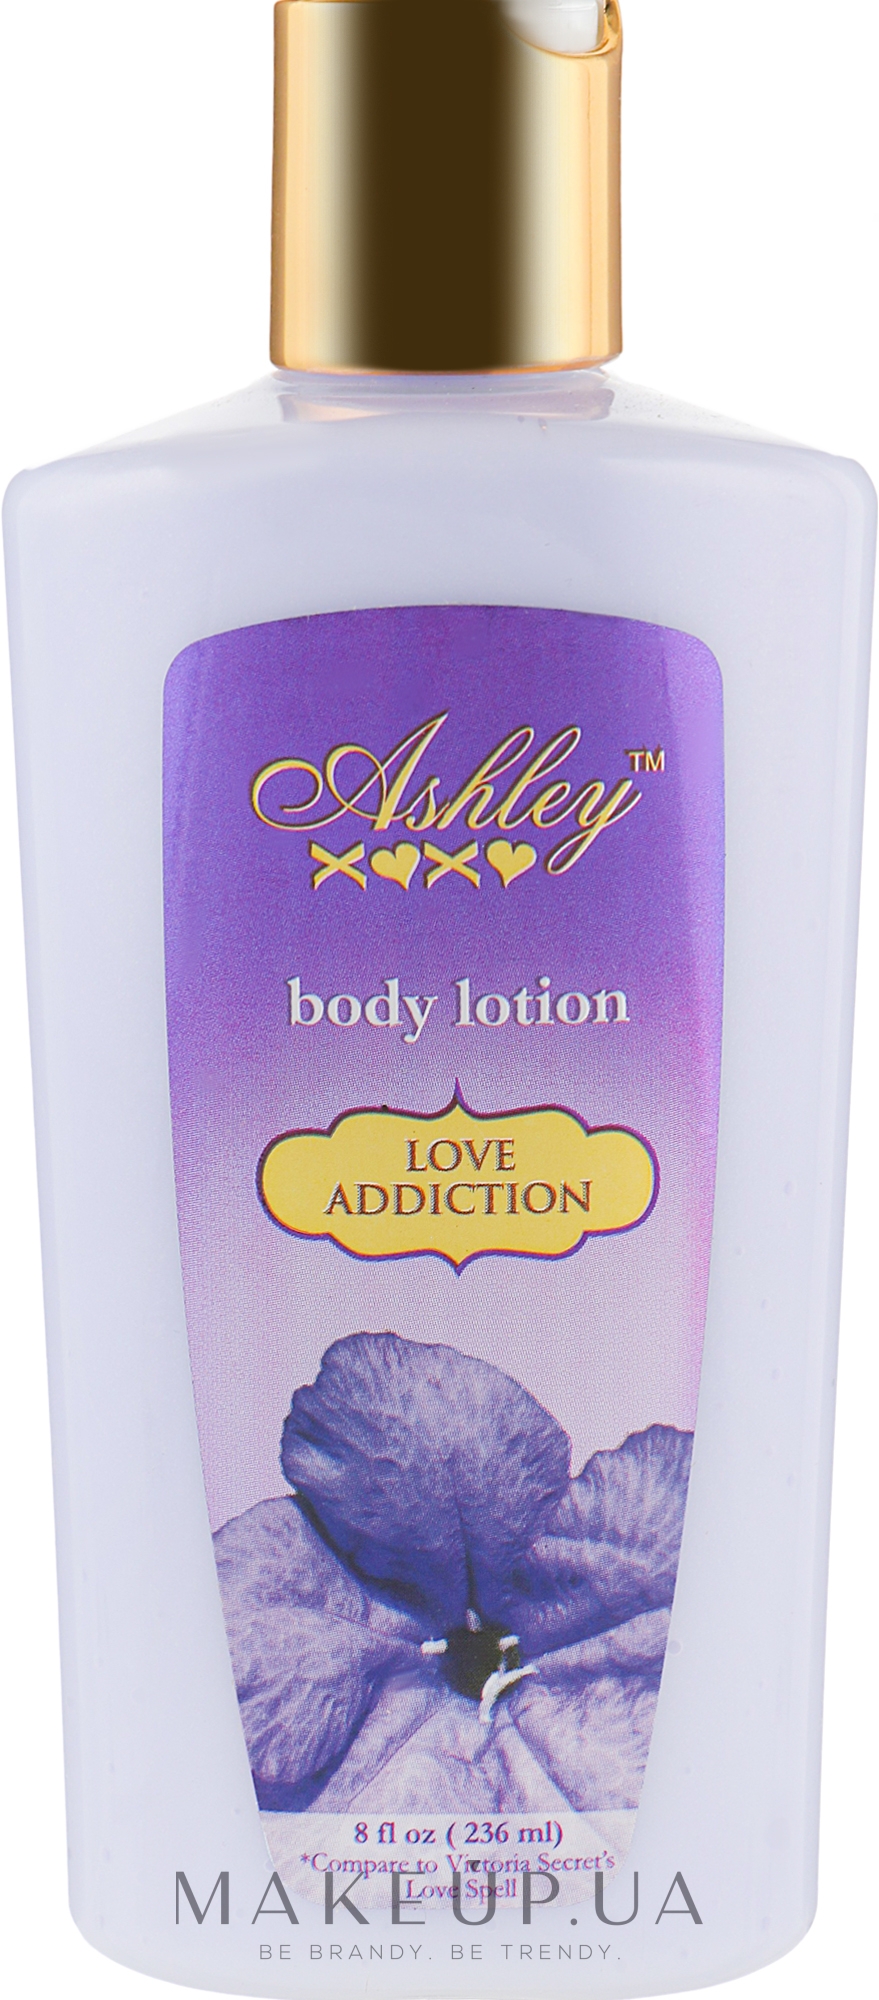 Лосьон для всего тела - Ashley Love Addiction Body Lotion — фото 236ml